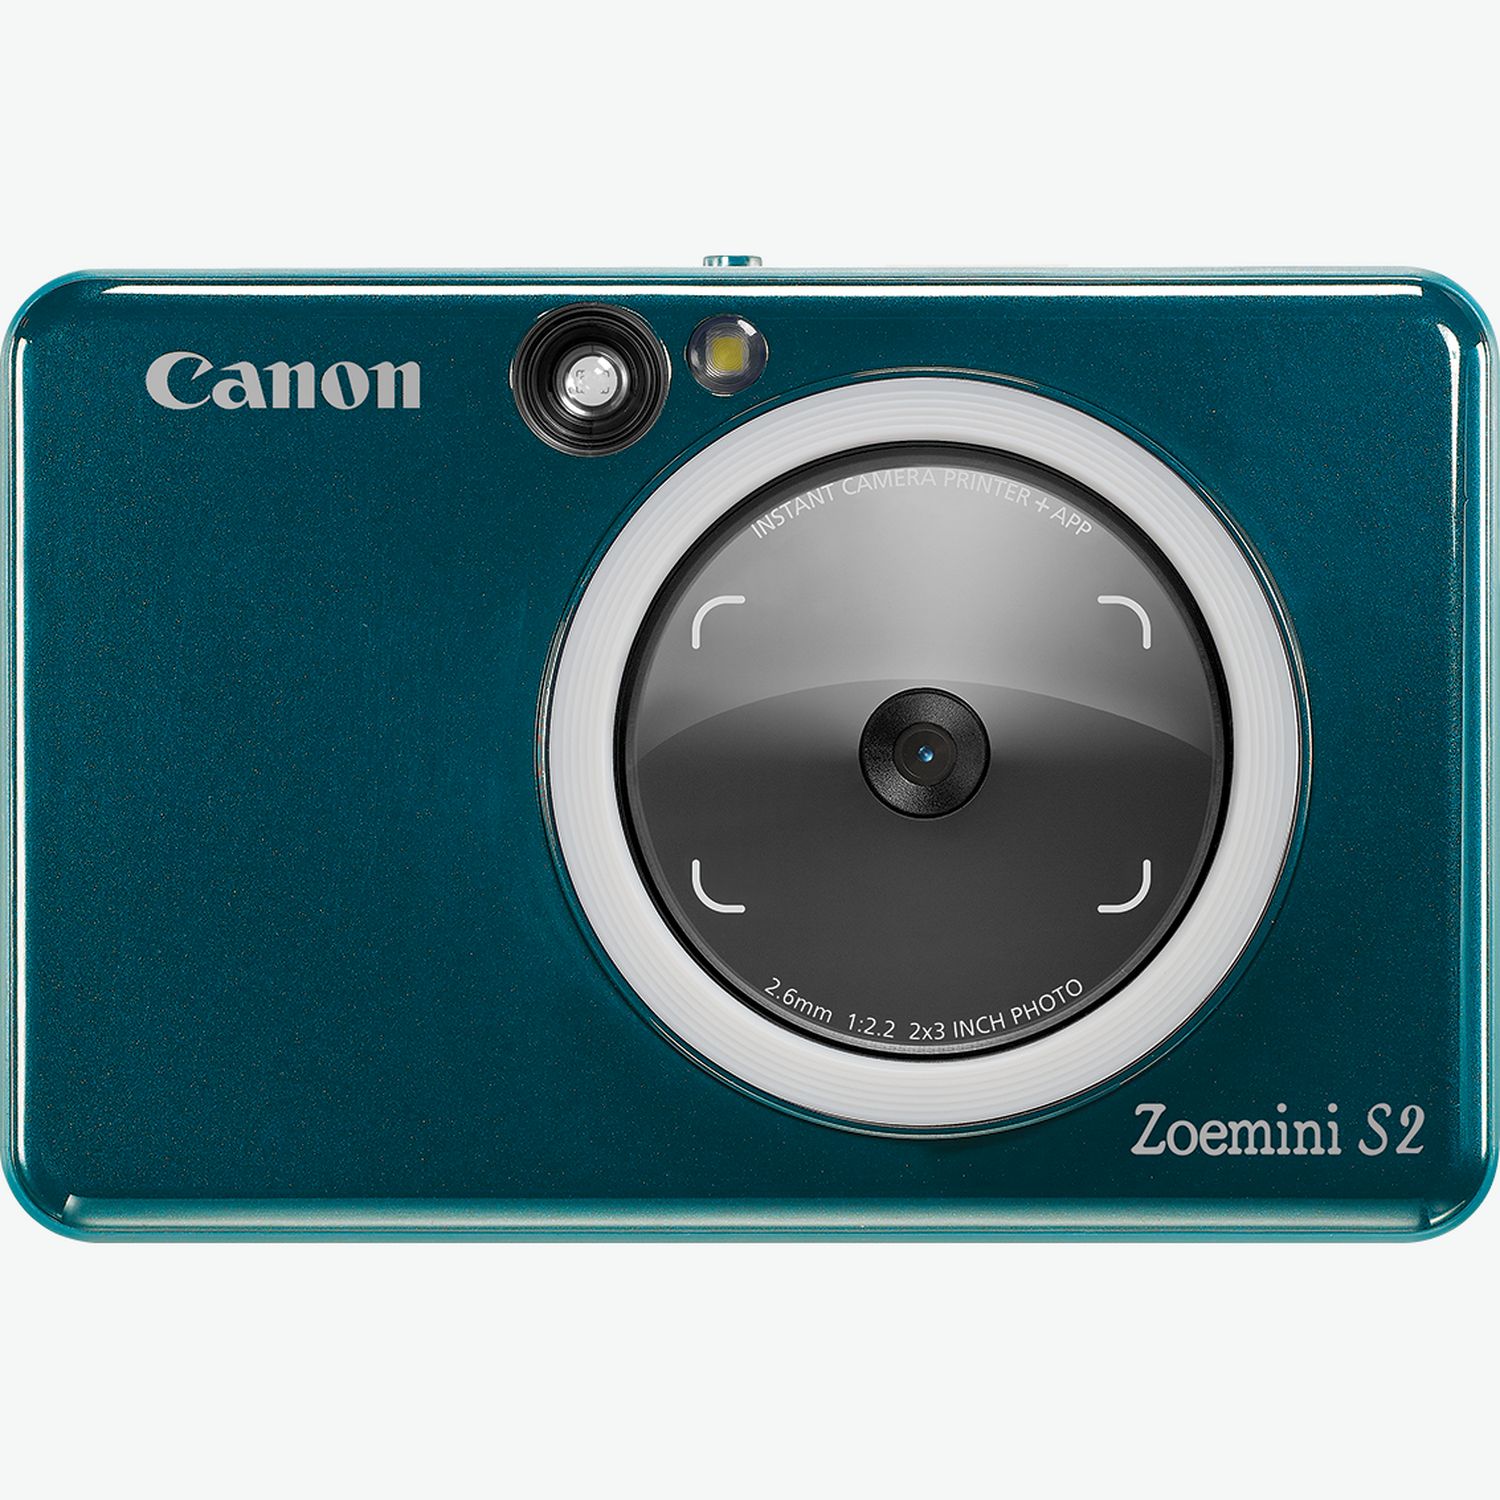 Canon Zoemini S Rose Gold + Papier Photo Canon Zink 2 x 3 (5 x 7,6 cm) 20  Feuilles